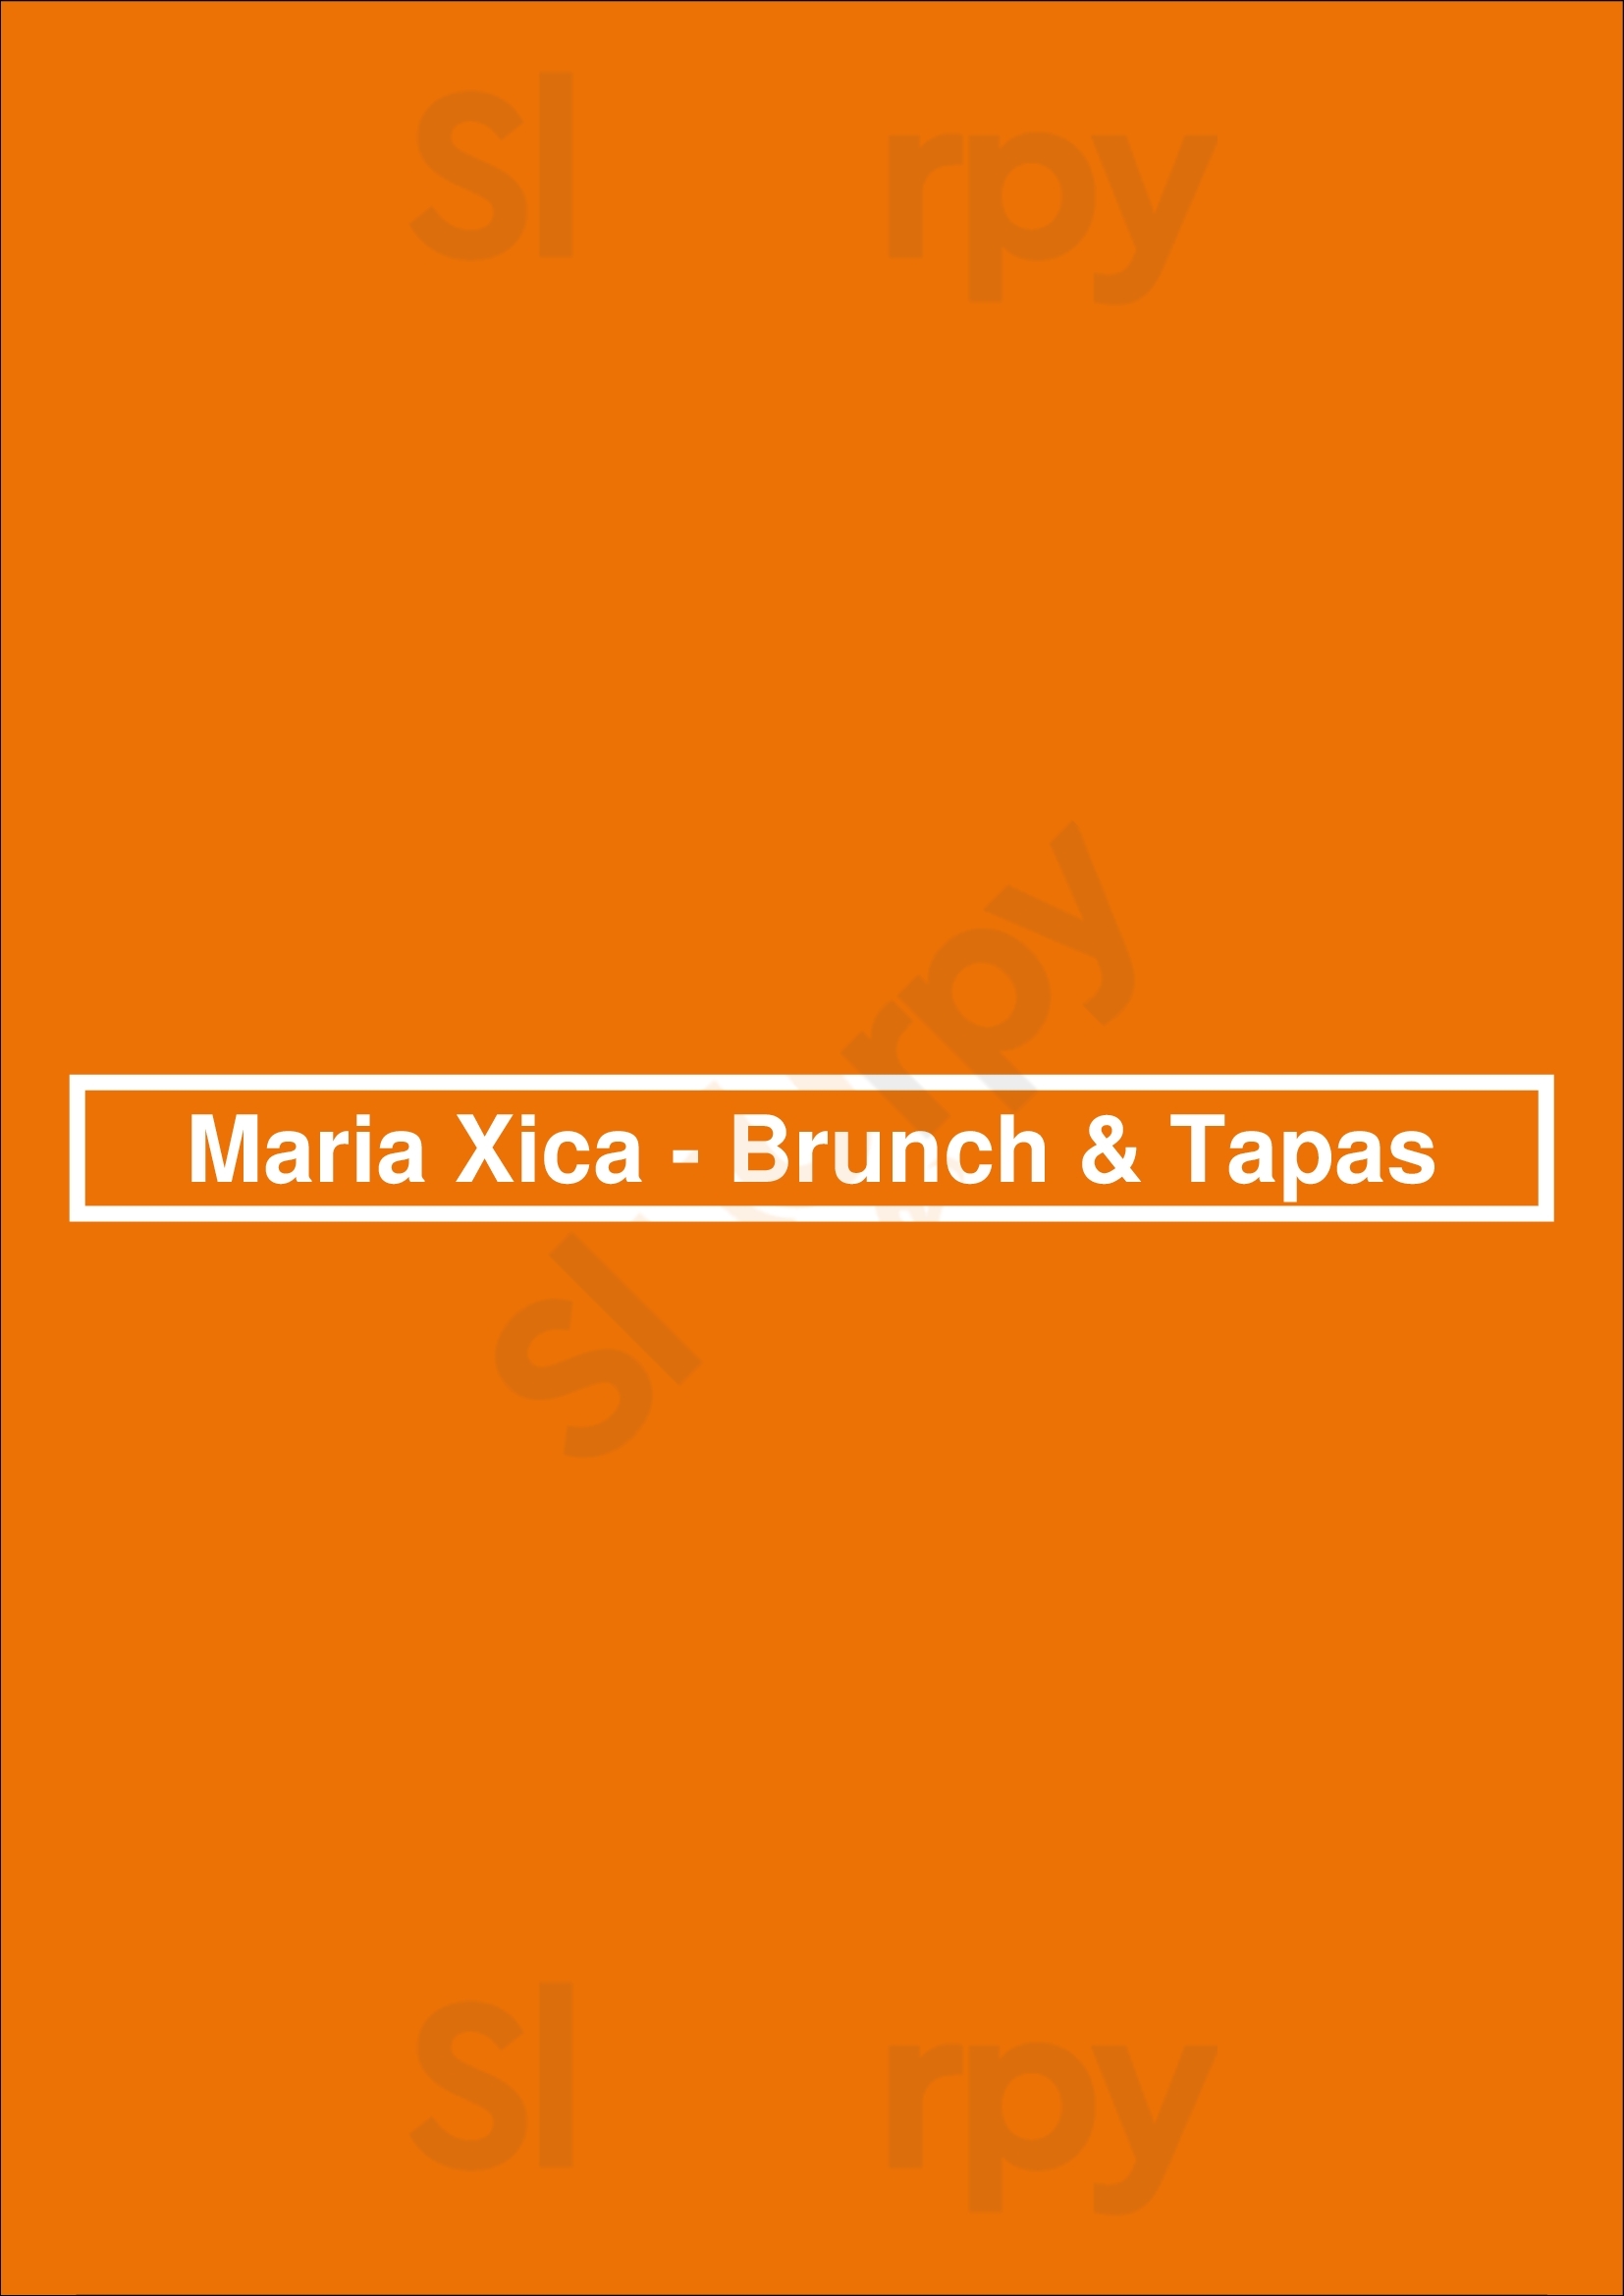 Maria Xica - Brunch & Tapas Caldas da Rainha Menu - 1